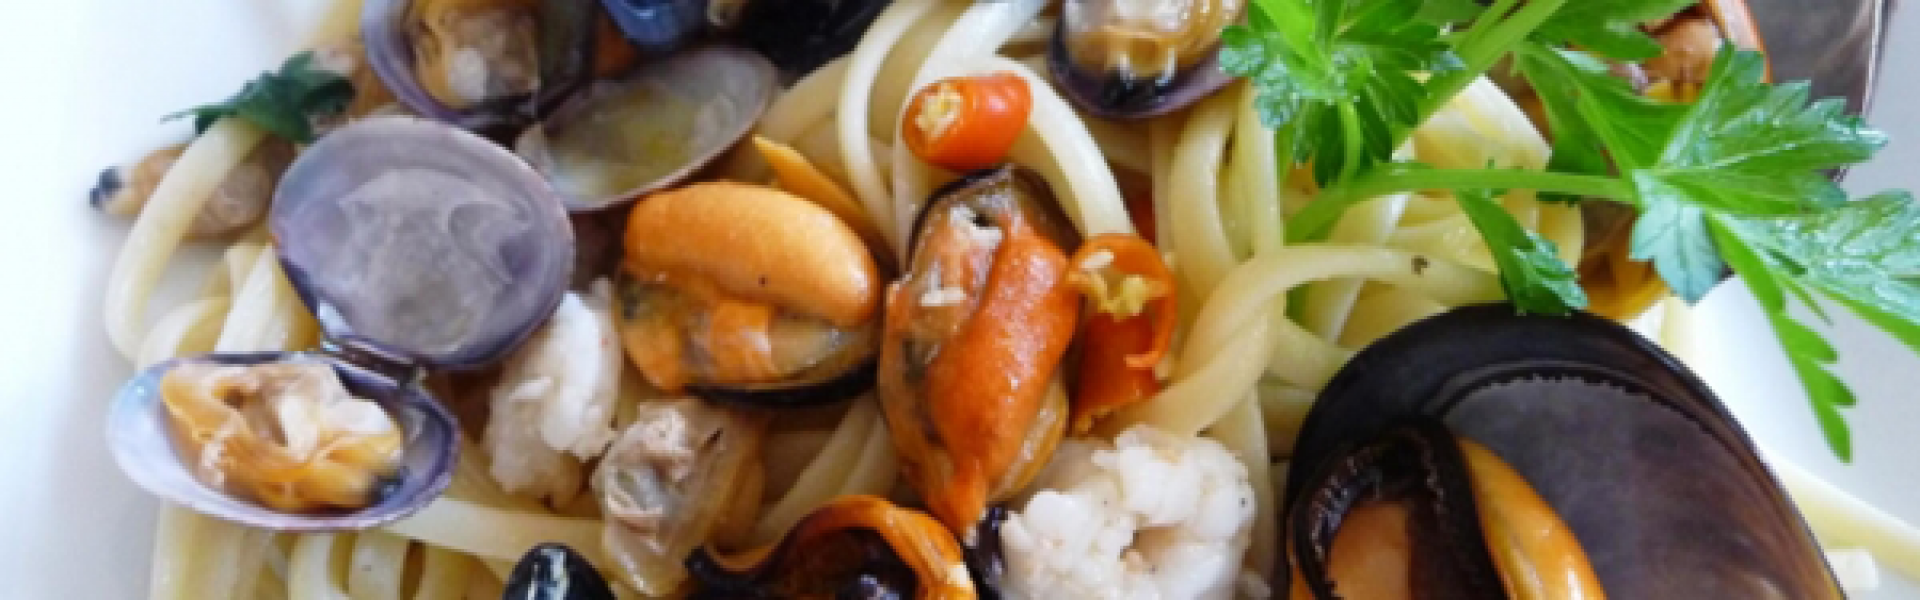 Slow Food: un Patrimonio anche Siciliano